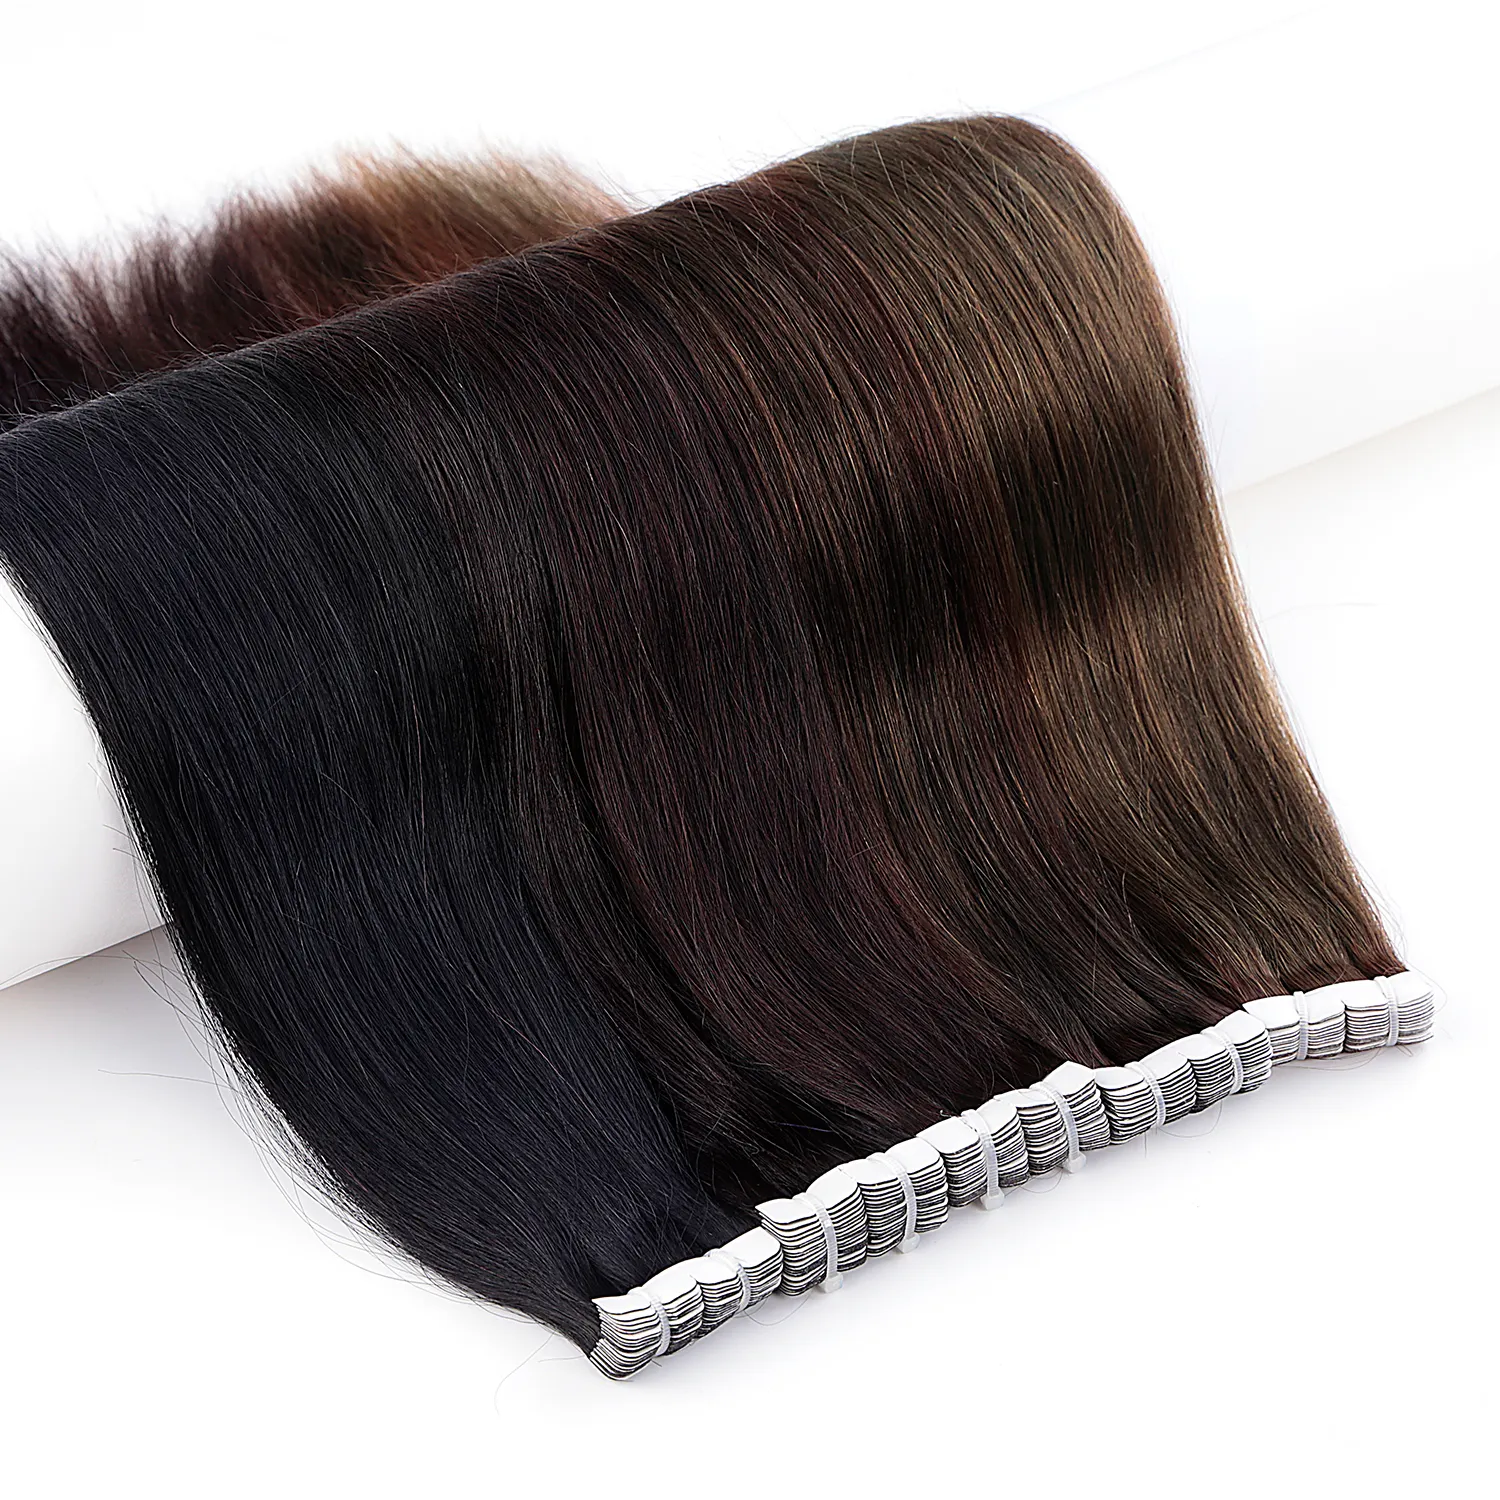 Salon Supply RAW 100% Human Remy Slim Doble dibujado Mini cinta en la extensión del cabello Ombre Balayage color Invisible OEM al por mayor